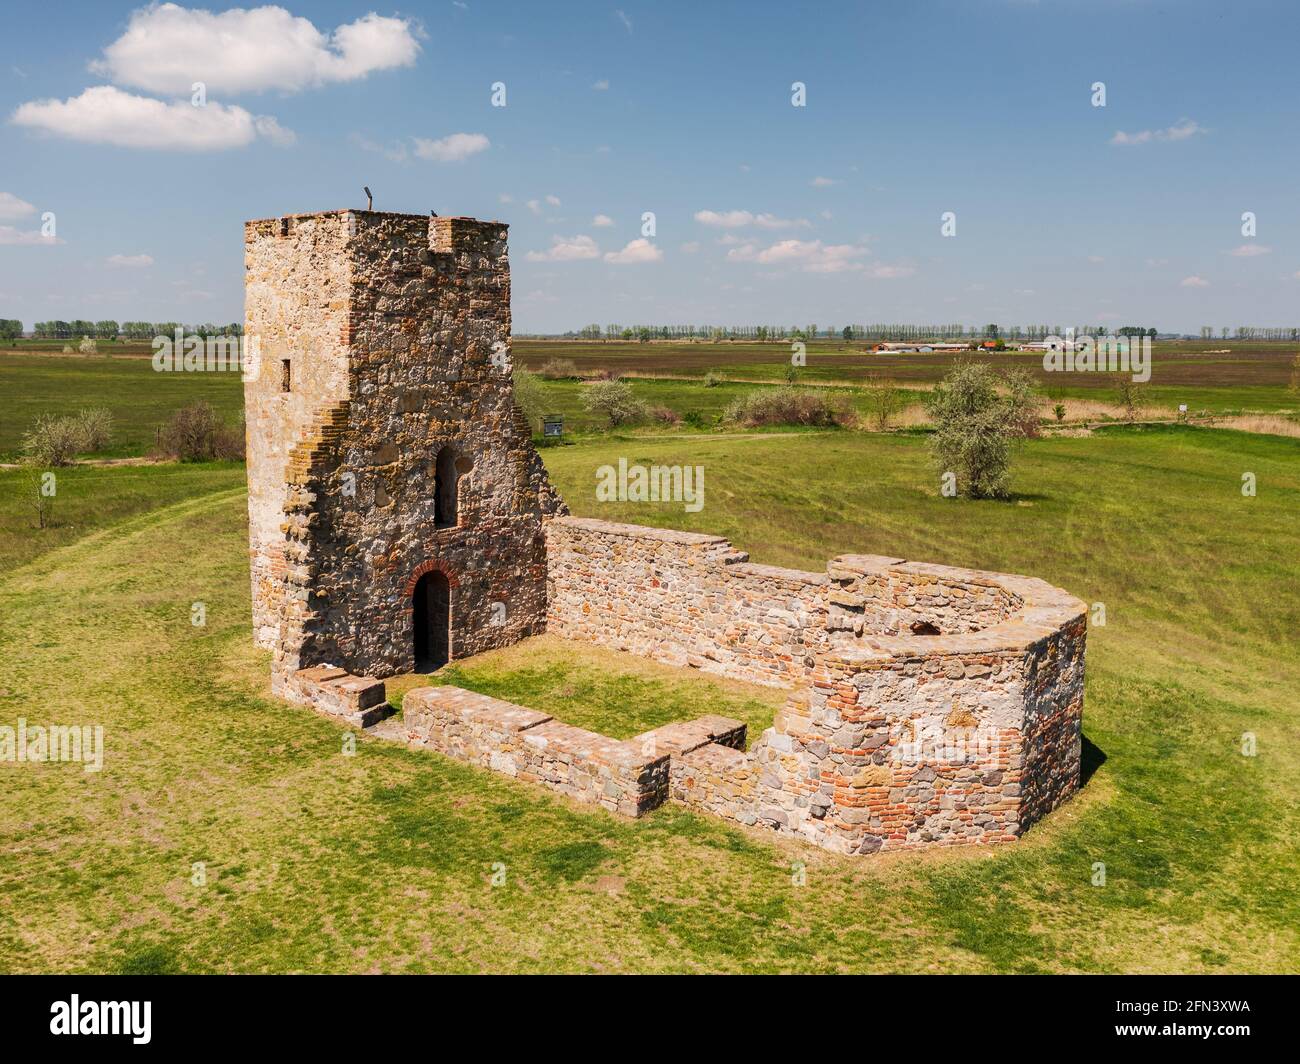 Der Turm von Csonka ist ein altes Denkmal in Südungarn. Erbaut ca. 11. Jahrhundert. Nicht zu berühmt, aber interessanter Ort in der Mitte der Alfold Region. Stockfoto